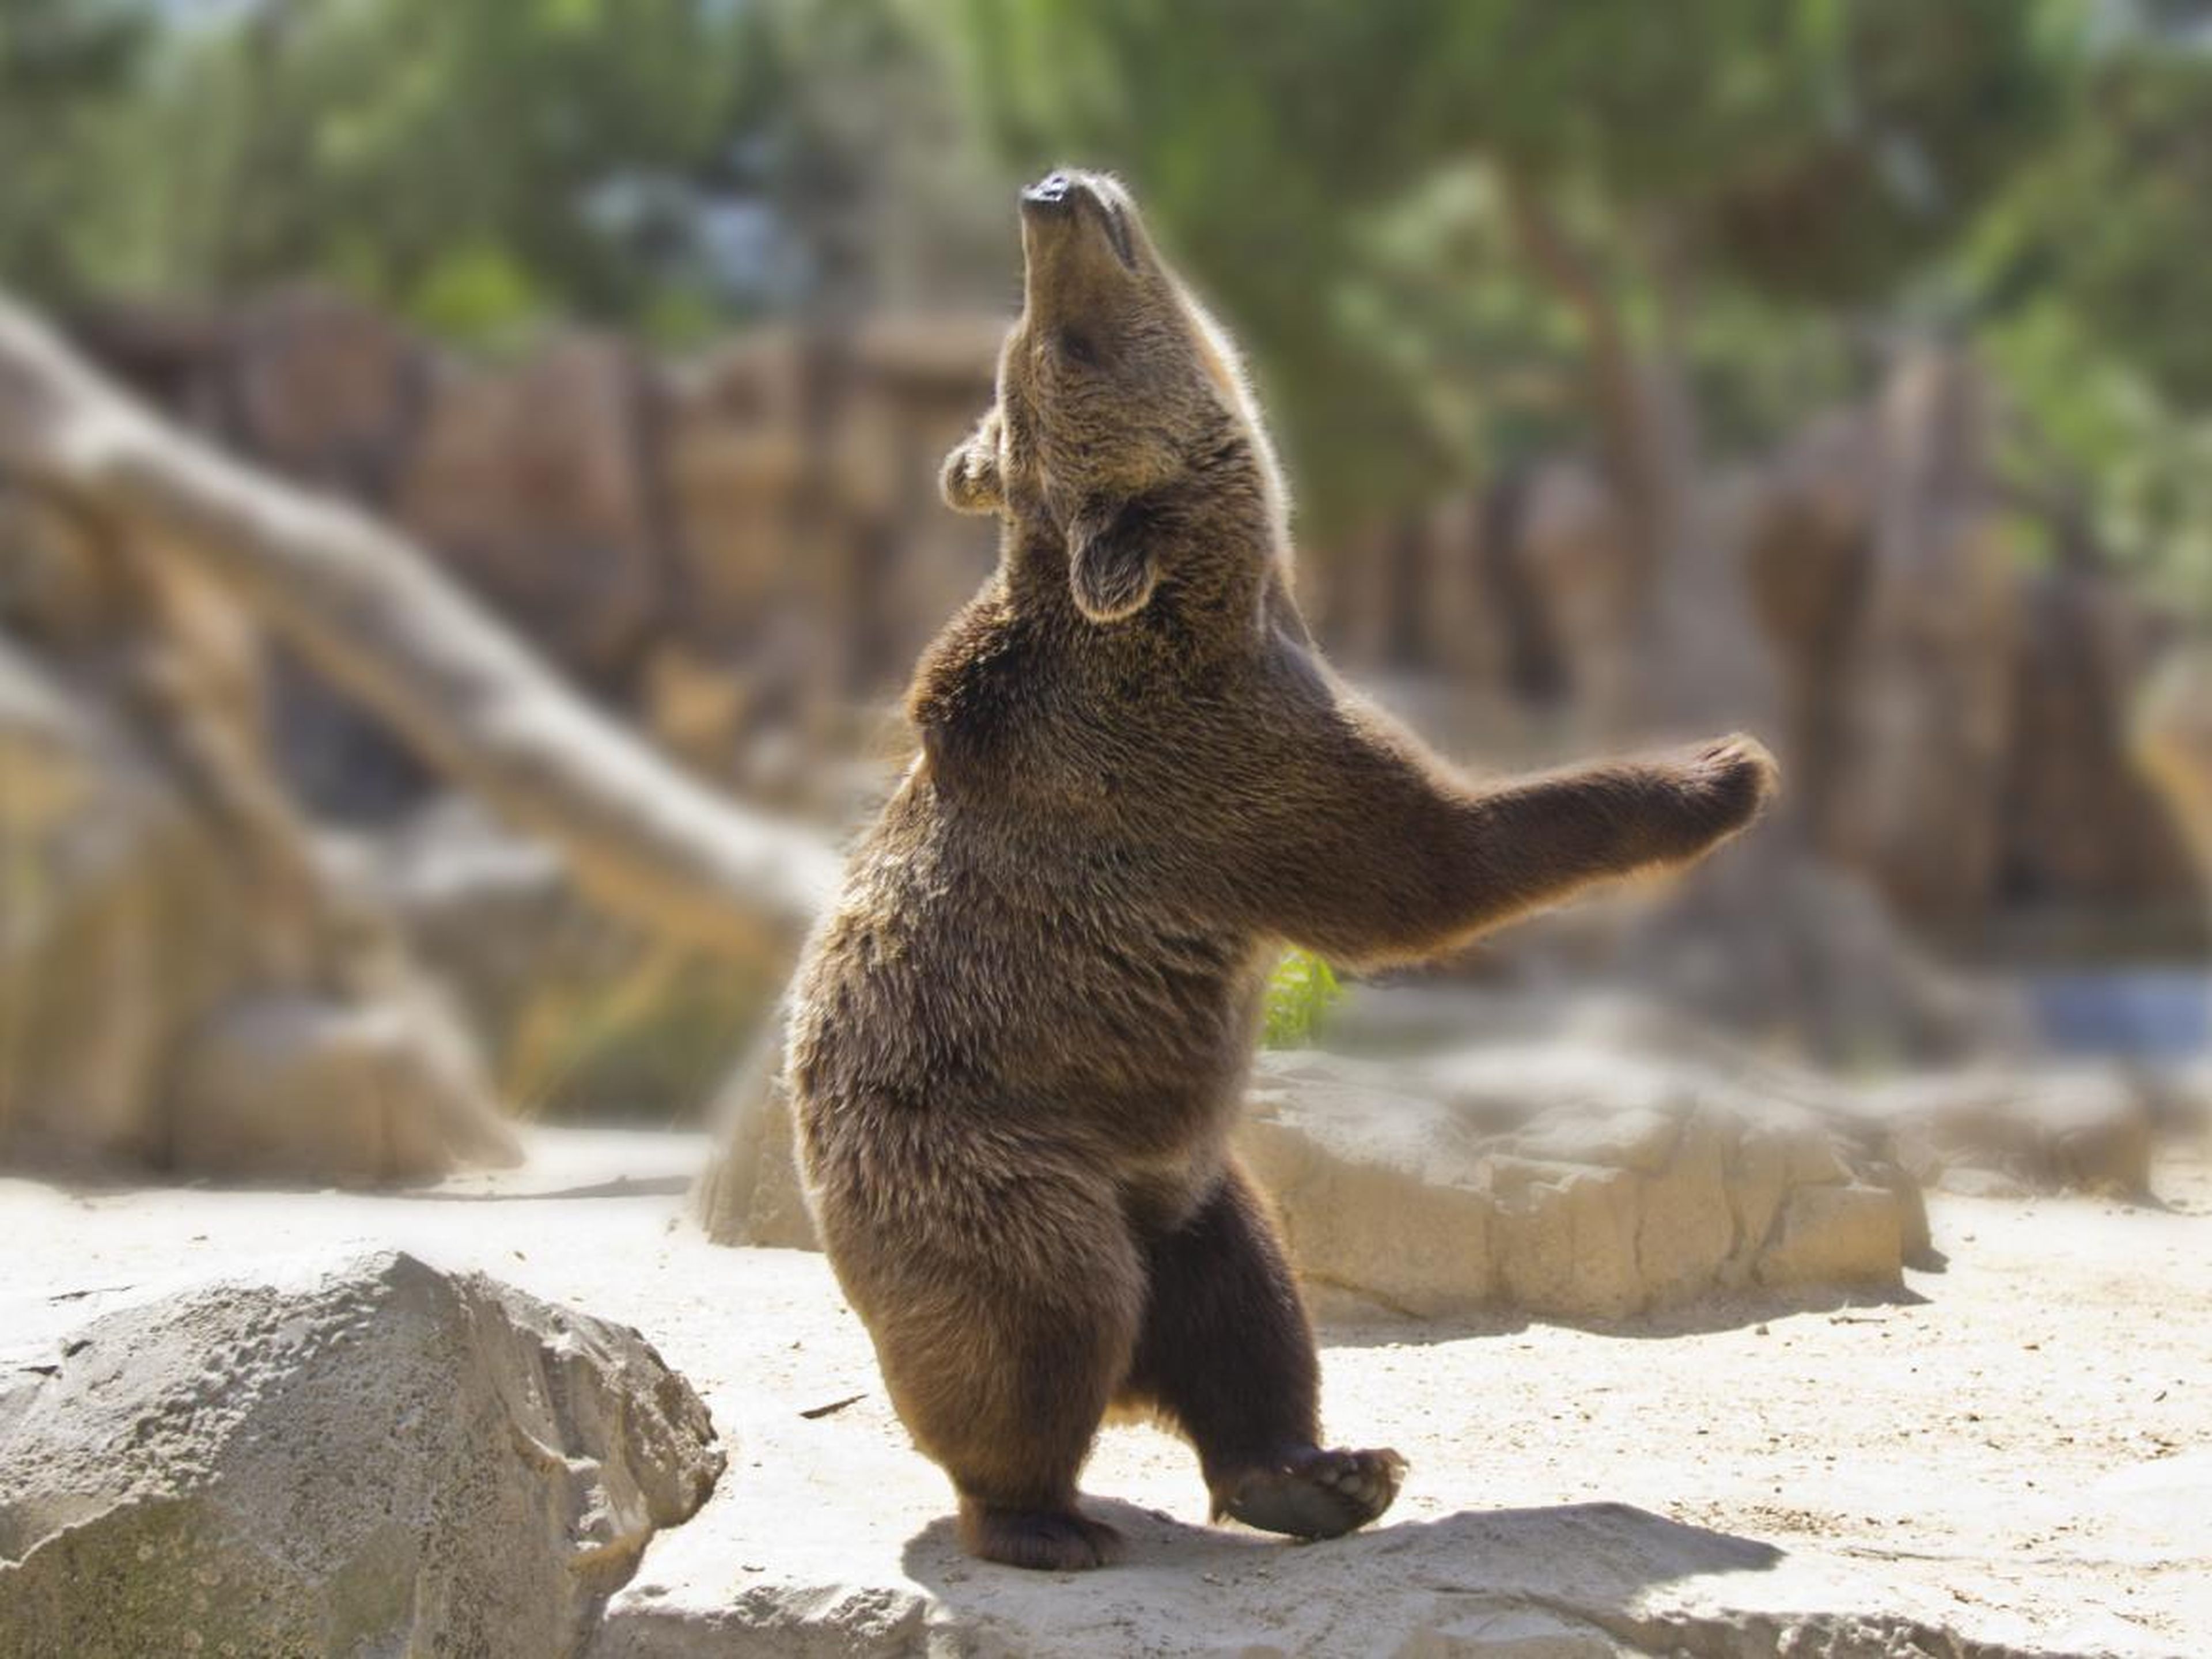 Algunas fotos muestran a los animales haciendo cosas humanas como bailar. Este oso está en plena danza..